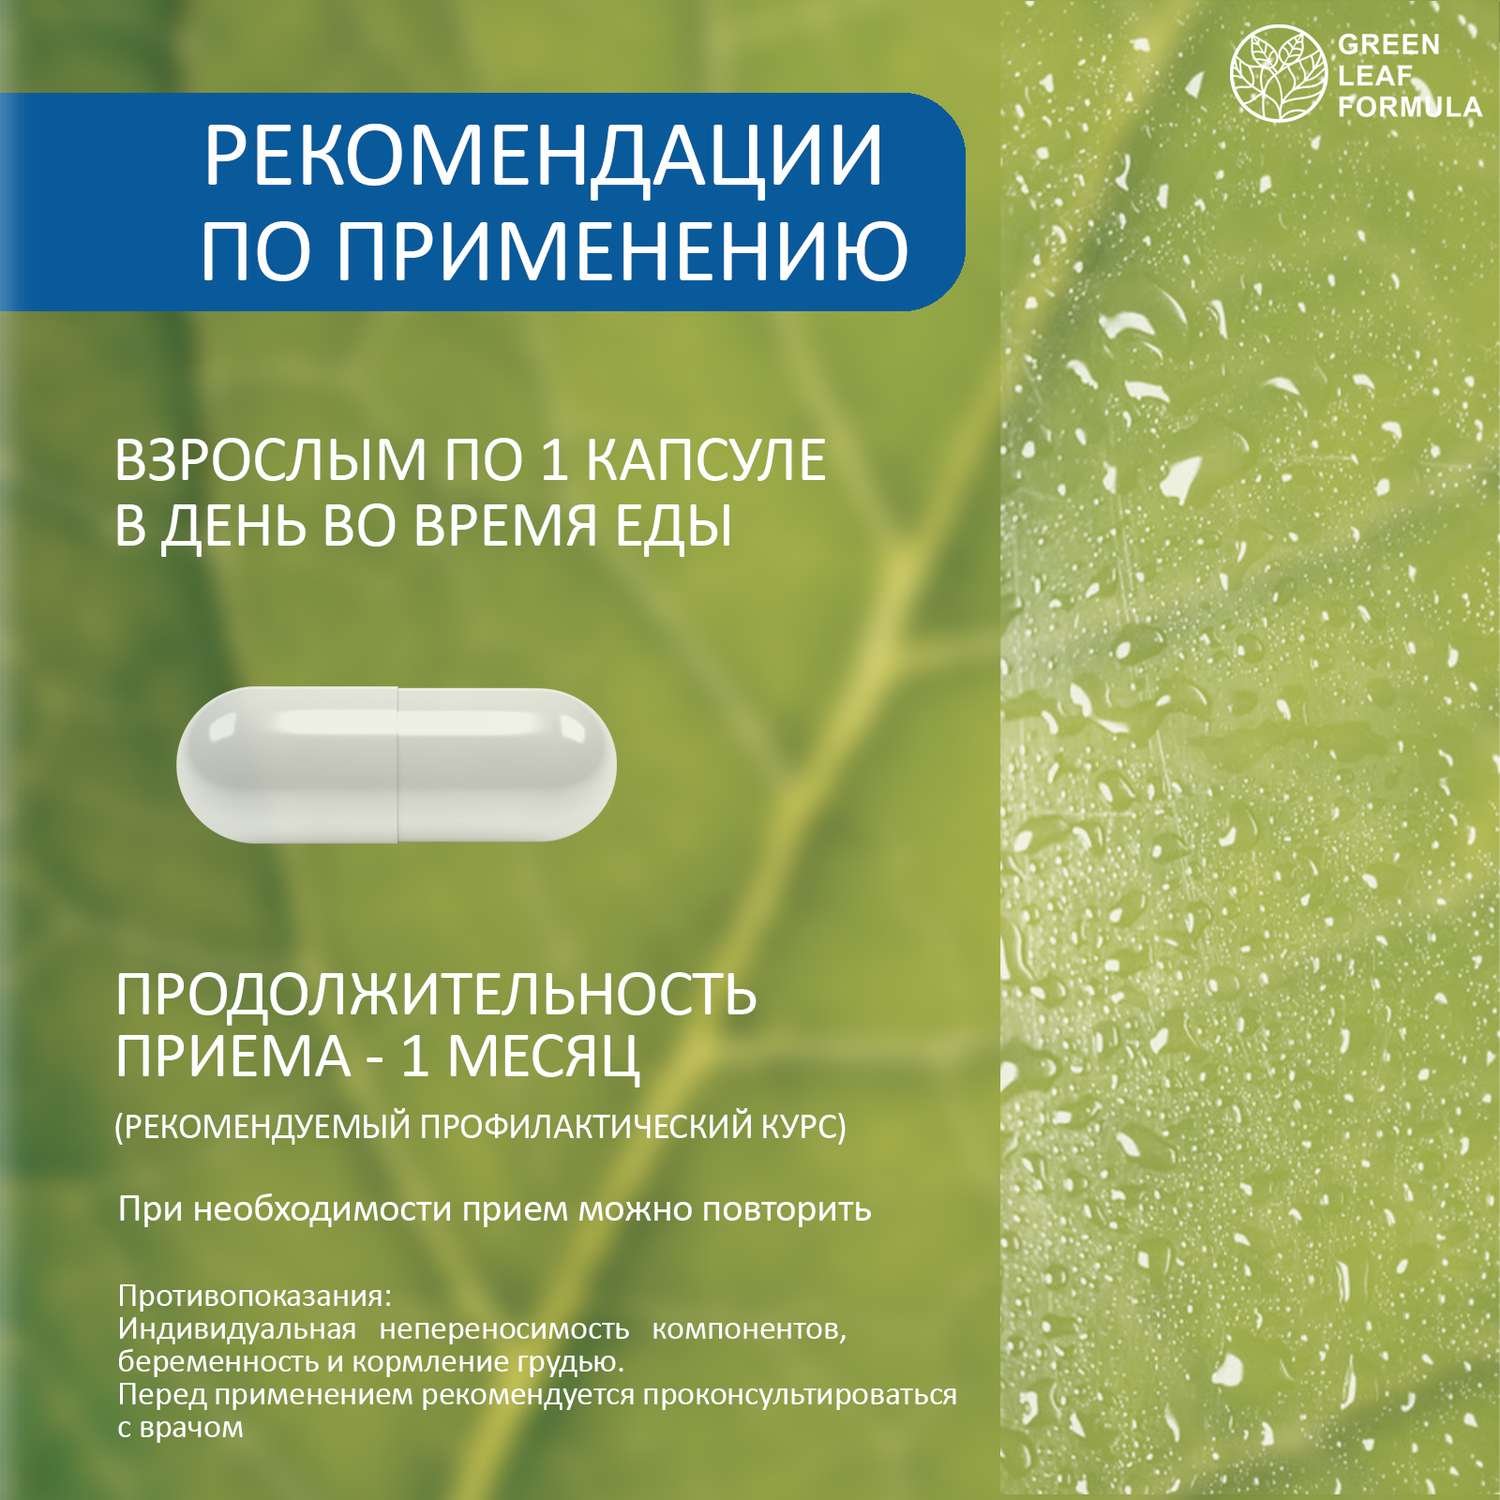 Набор Витамины для мозга Green Leaf Formula триптофан лецитин соевый для нервной системы фосфолипиды 2 банки - фото 9